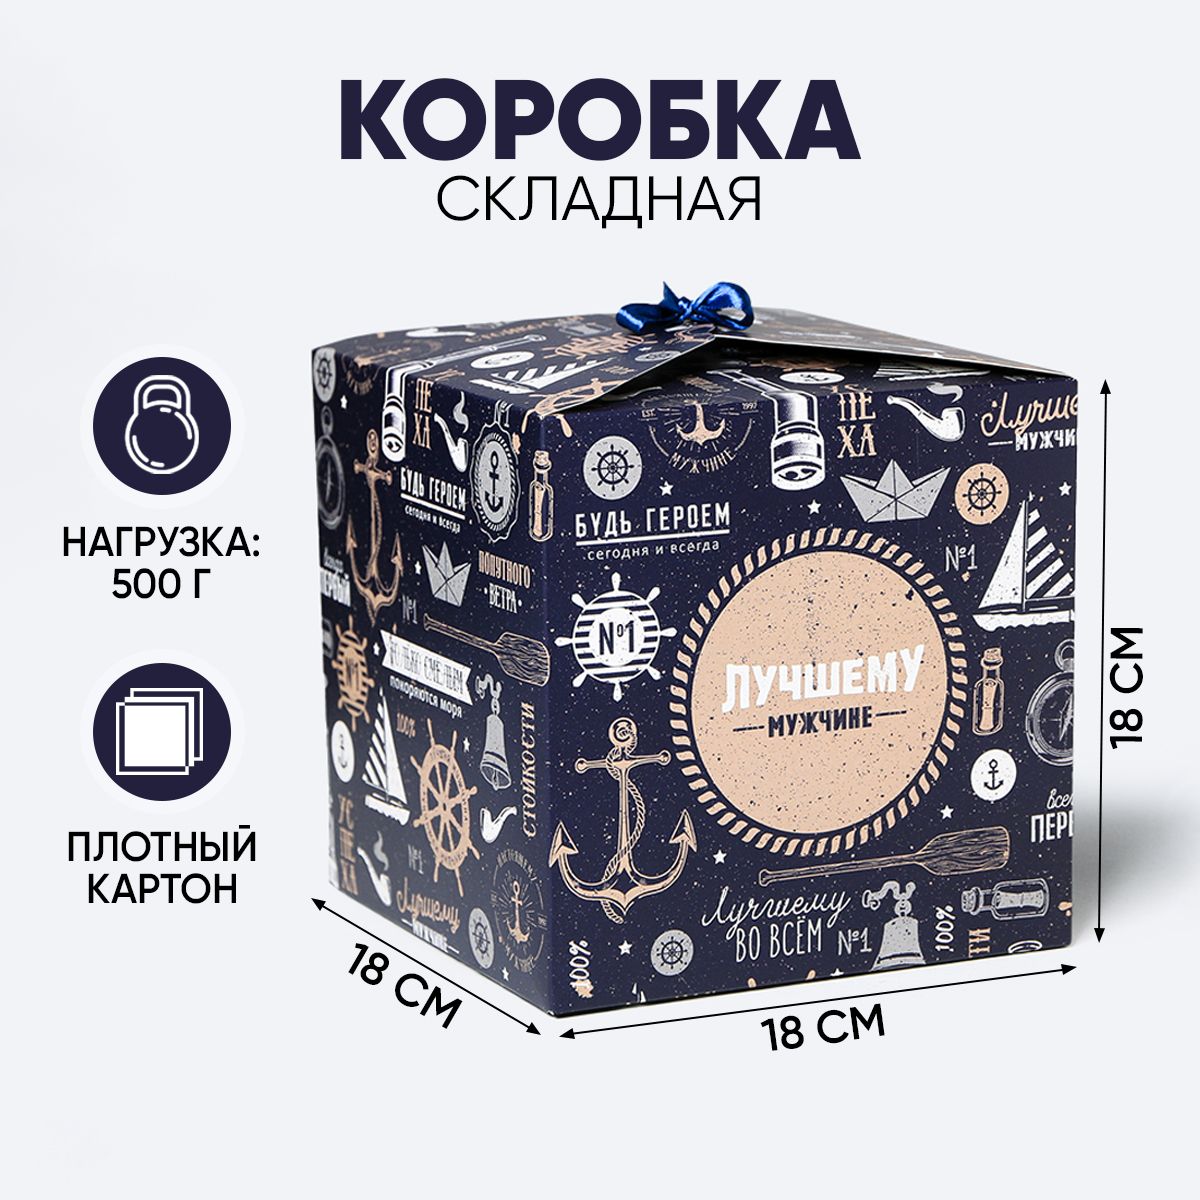 Производство подарочных коробок из картона в Москве. Как это устроено?